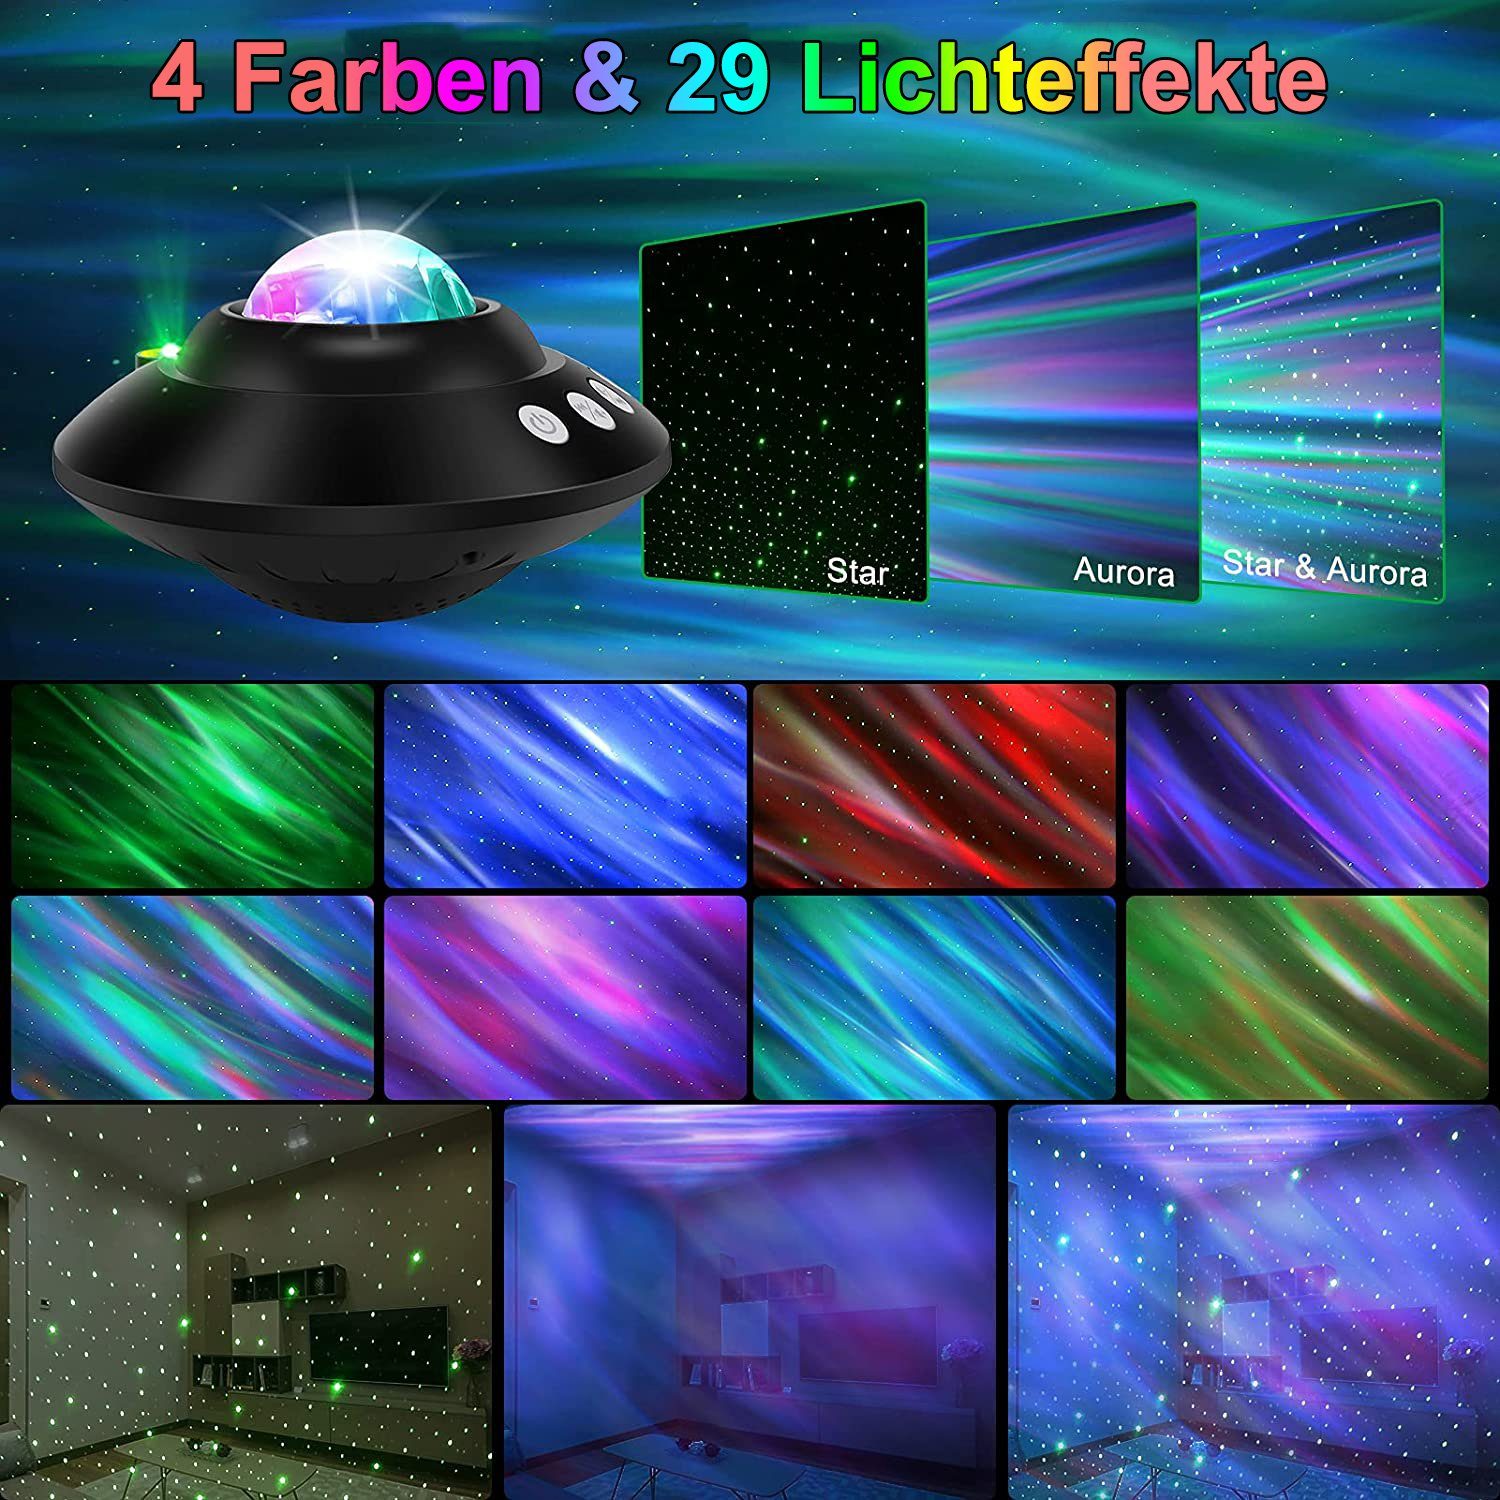 Sternenprojektor Nachtlicht Galaxy Projektor Lampe Bluetooth Lautsprecher  Stern Aurora Timing 3 in 1 für Gaming Room, Schlafzimmer, Decke, Home Decor  Ambiente Party Licht Weihnachten Geschenk : : Lighting